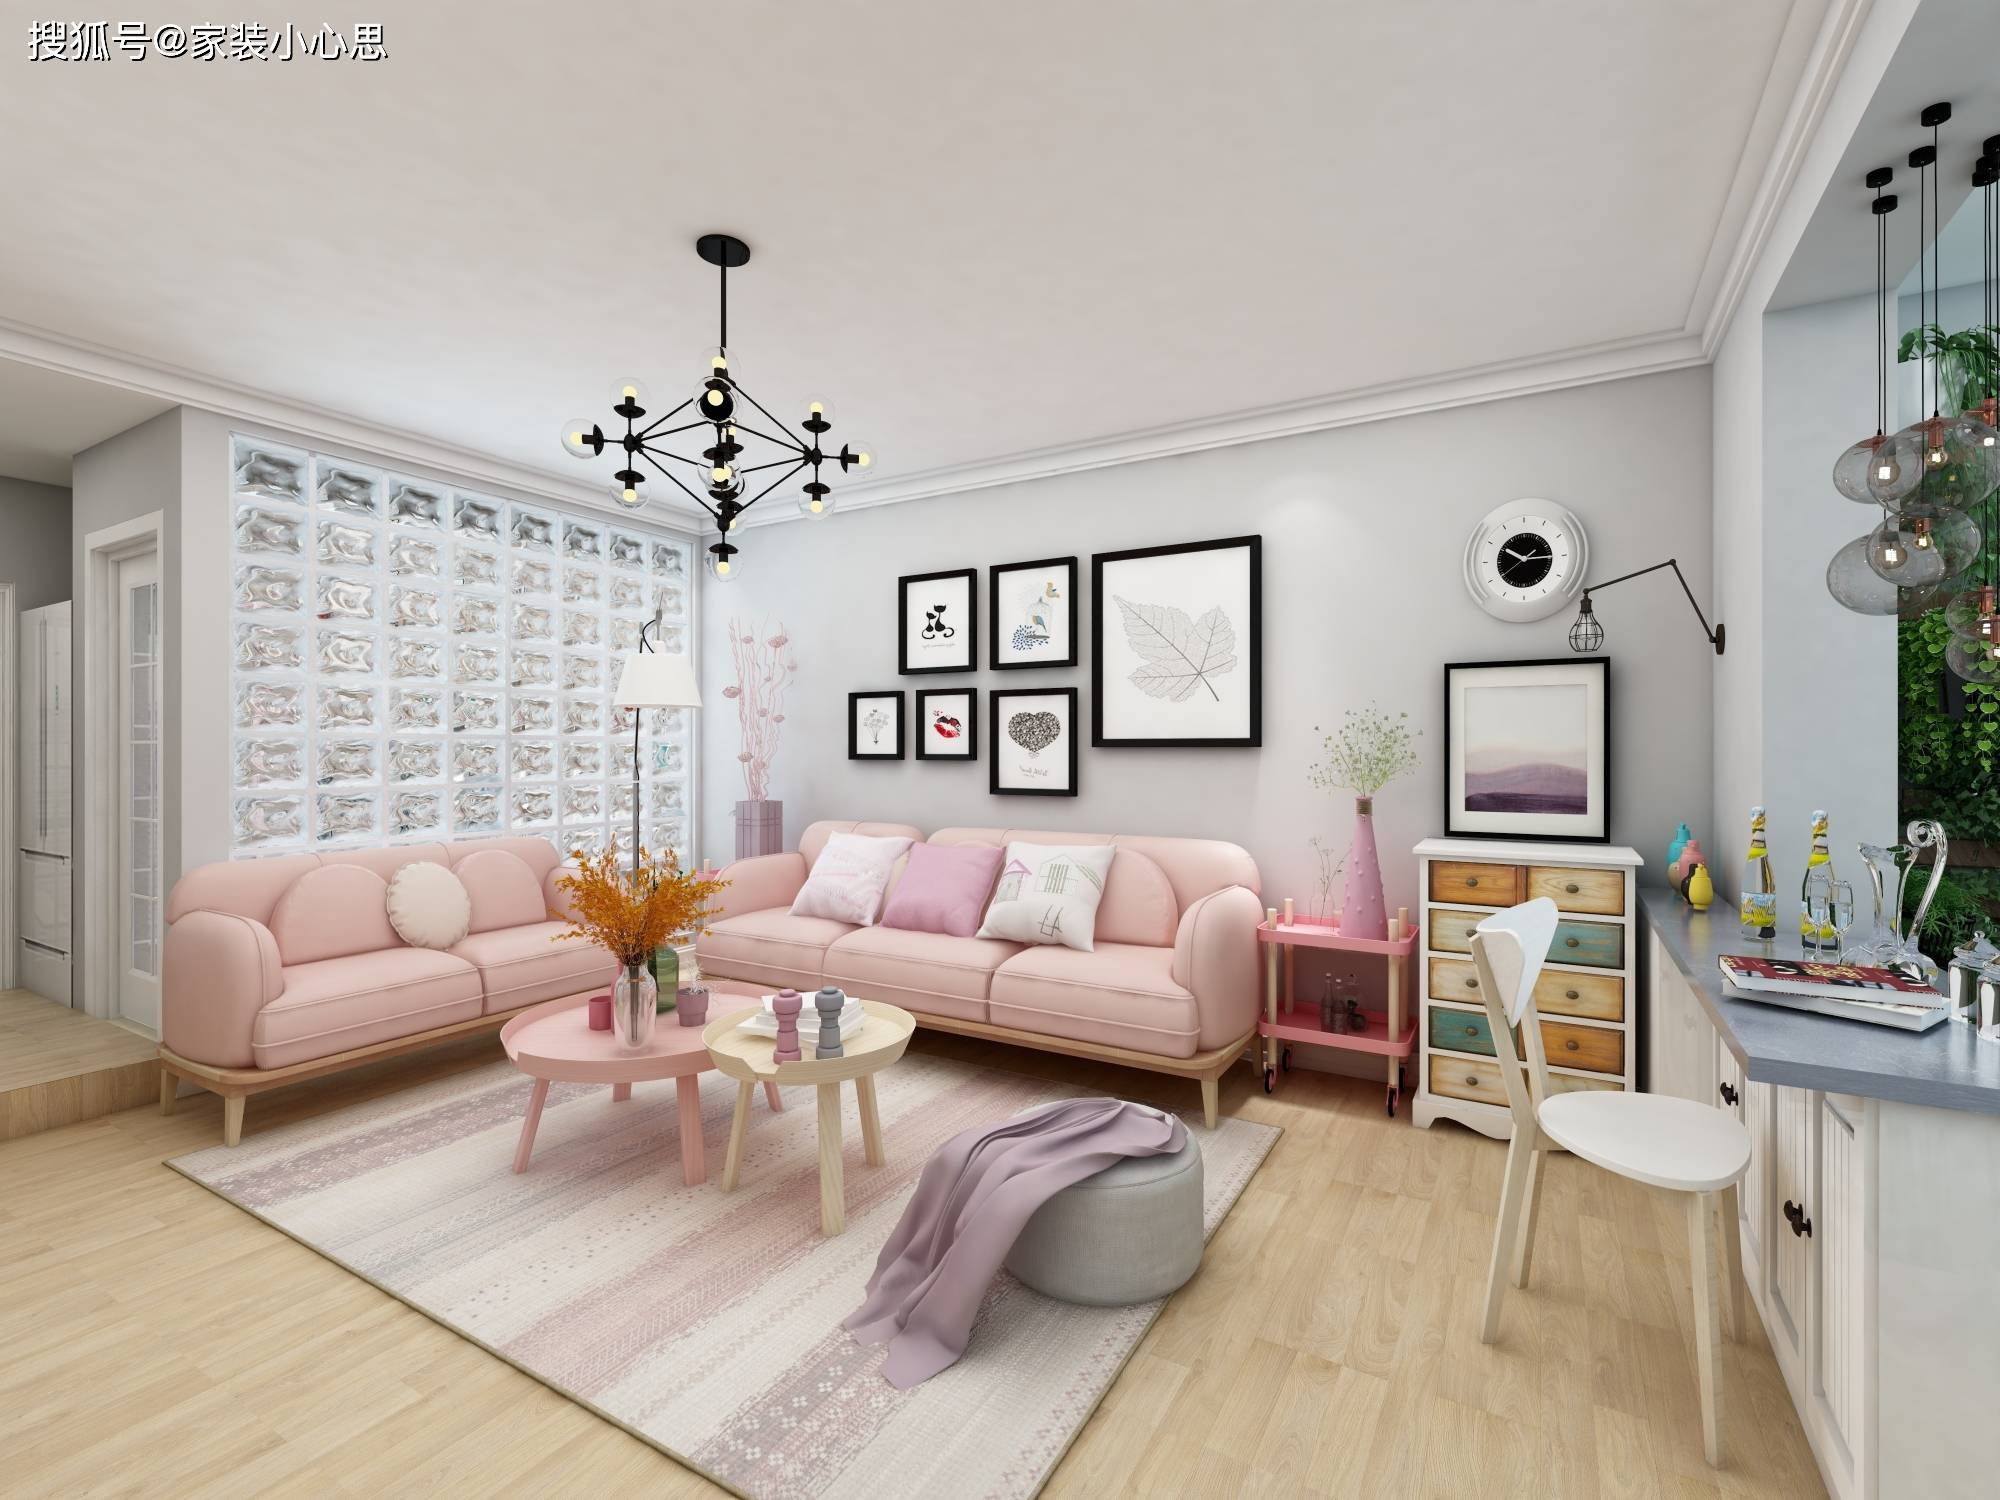 1,小户型客厅沙发二,小户型客厅家具窗帘颜色搭配也很重要,纯棕色遮光